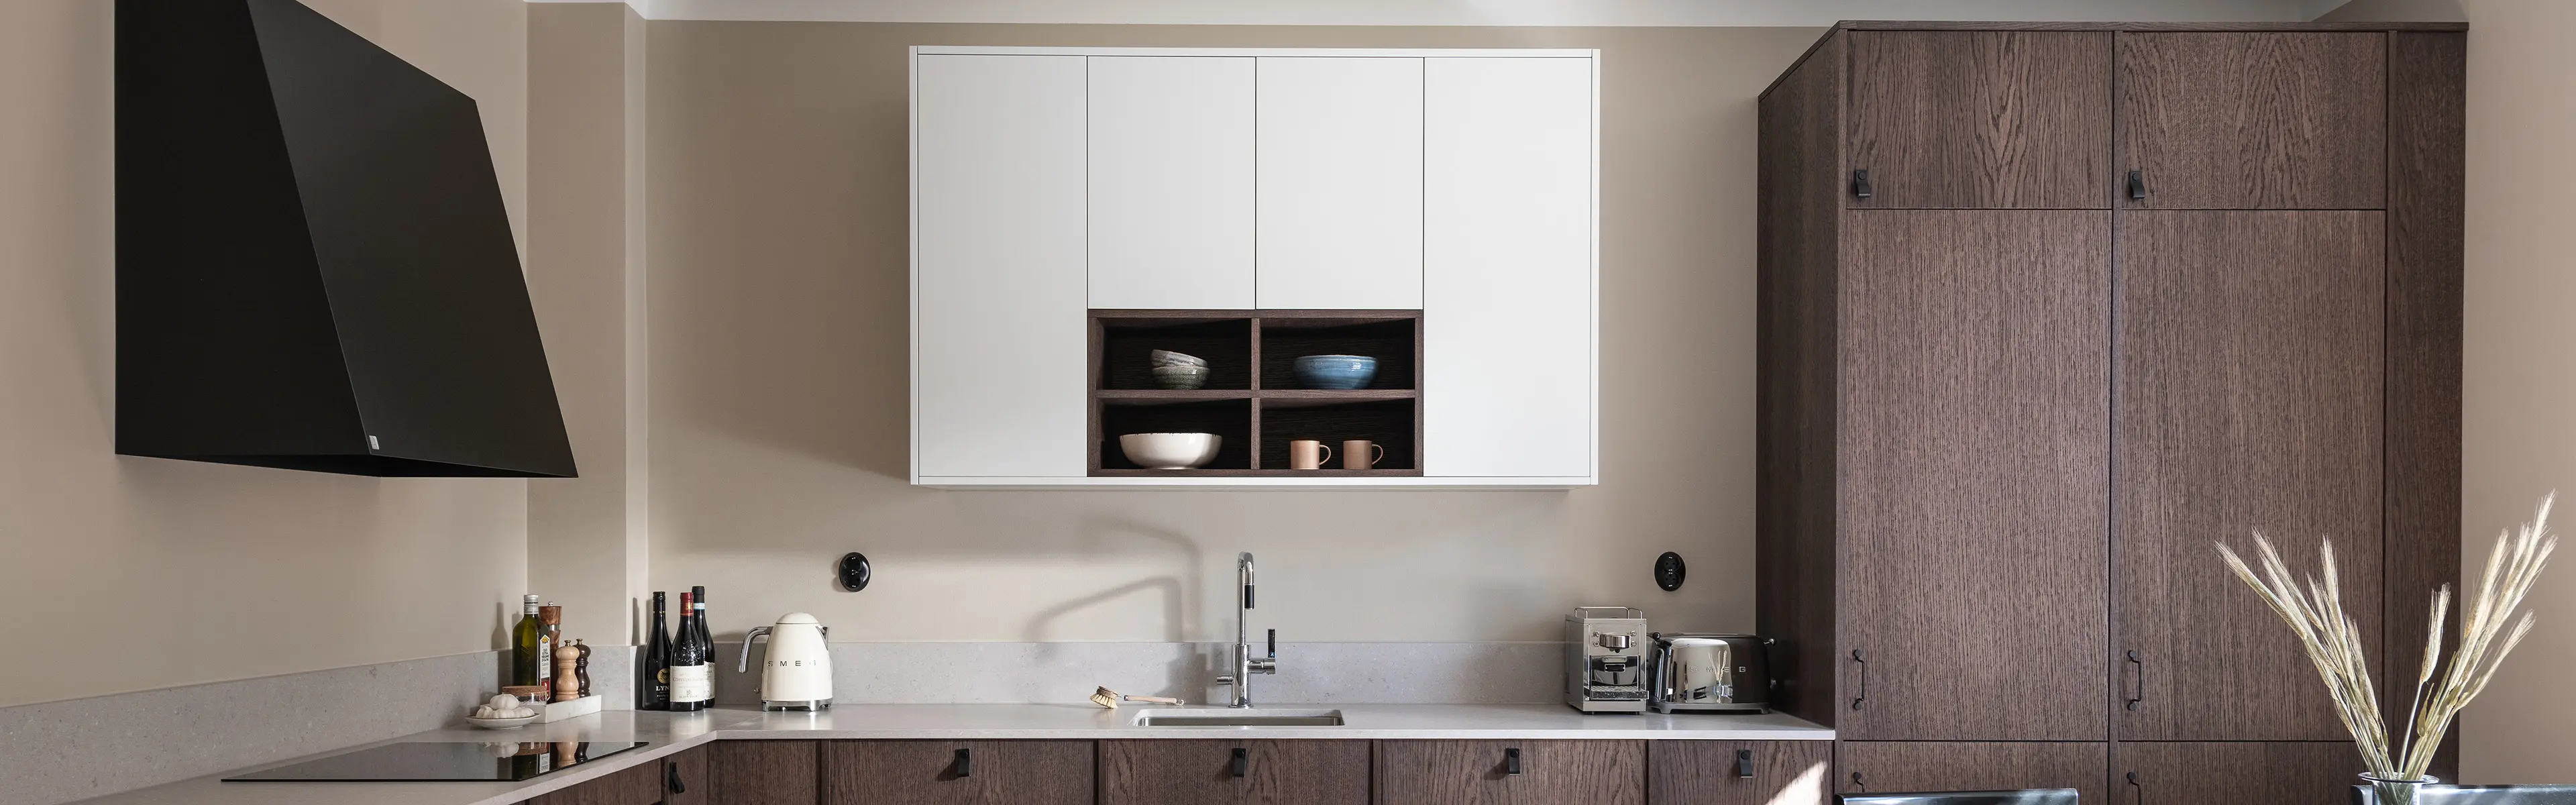 Svart veggmontert kjøkkenventilator i kjøkken med kjøkkeninnredning i mørkt treverk.